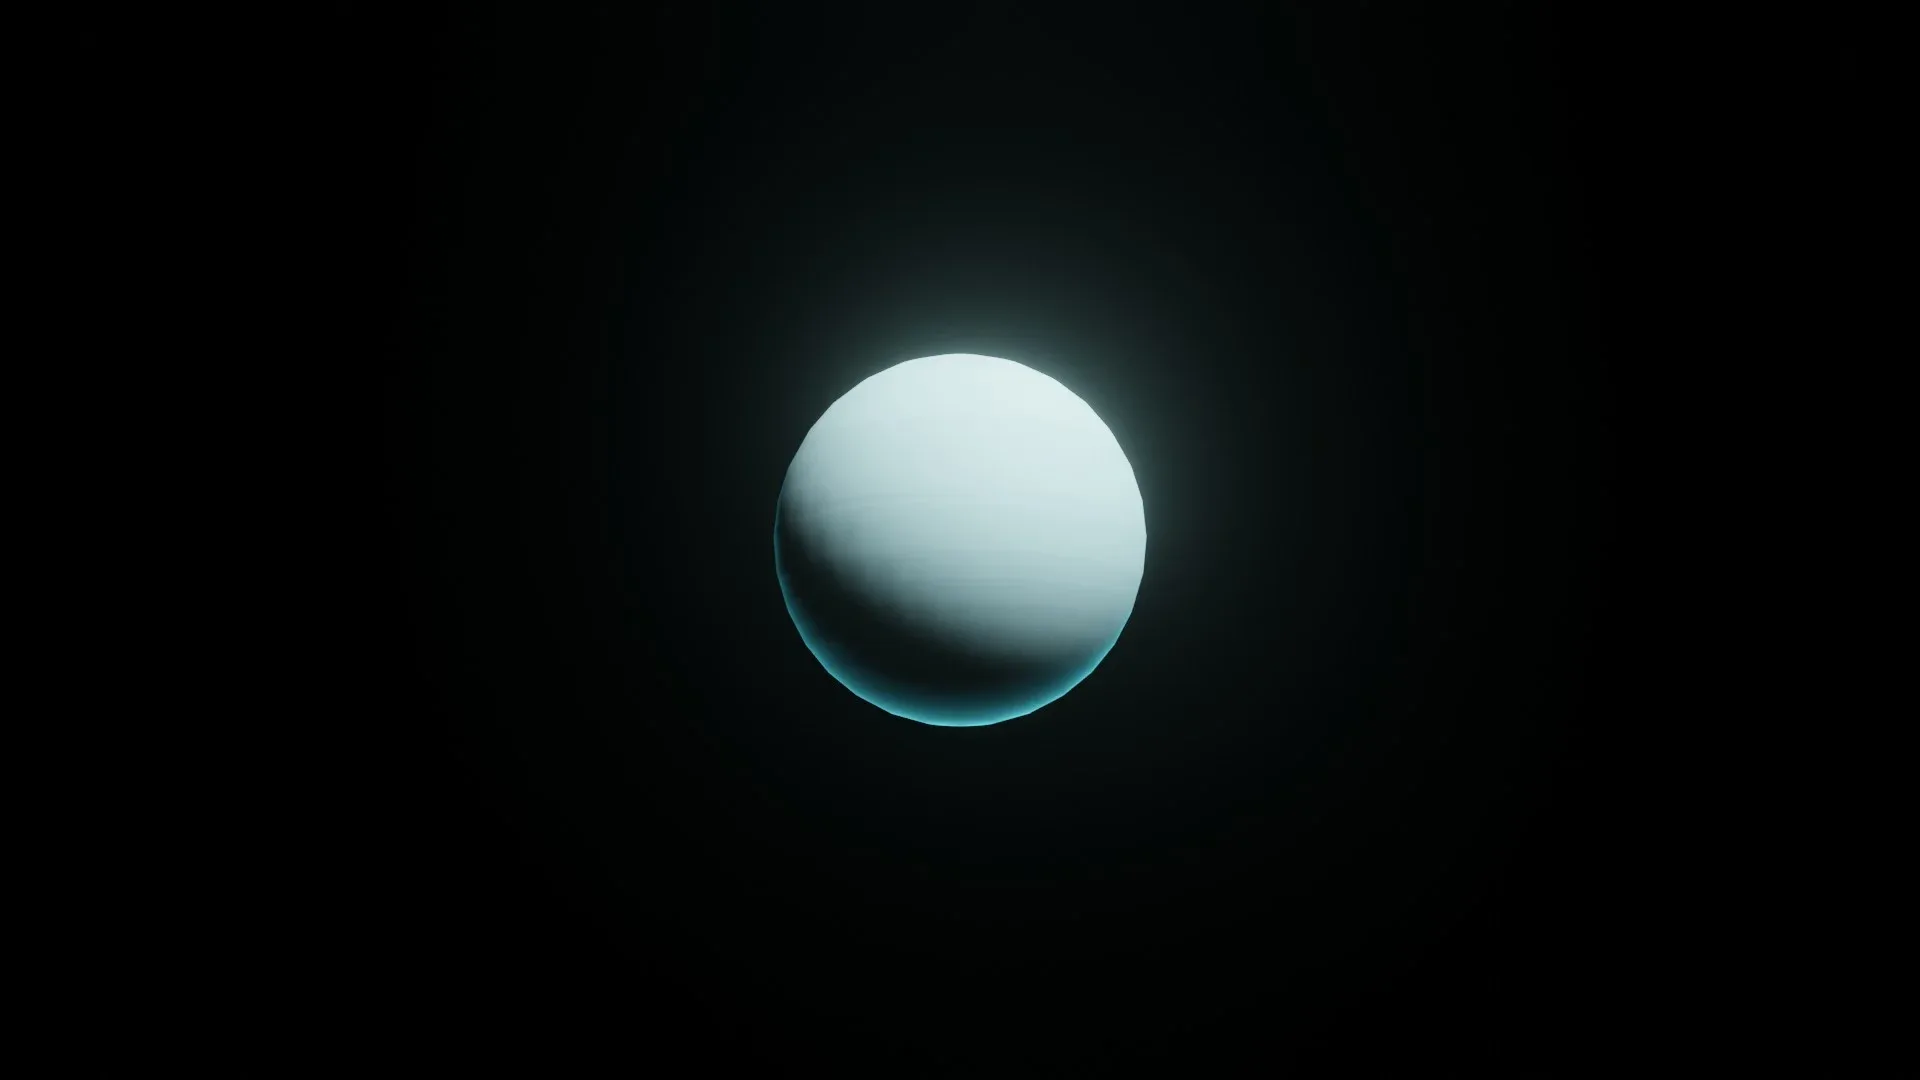 Stylized Planet Uranus 3D Model 2k/4k/8k Textures